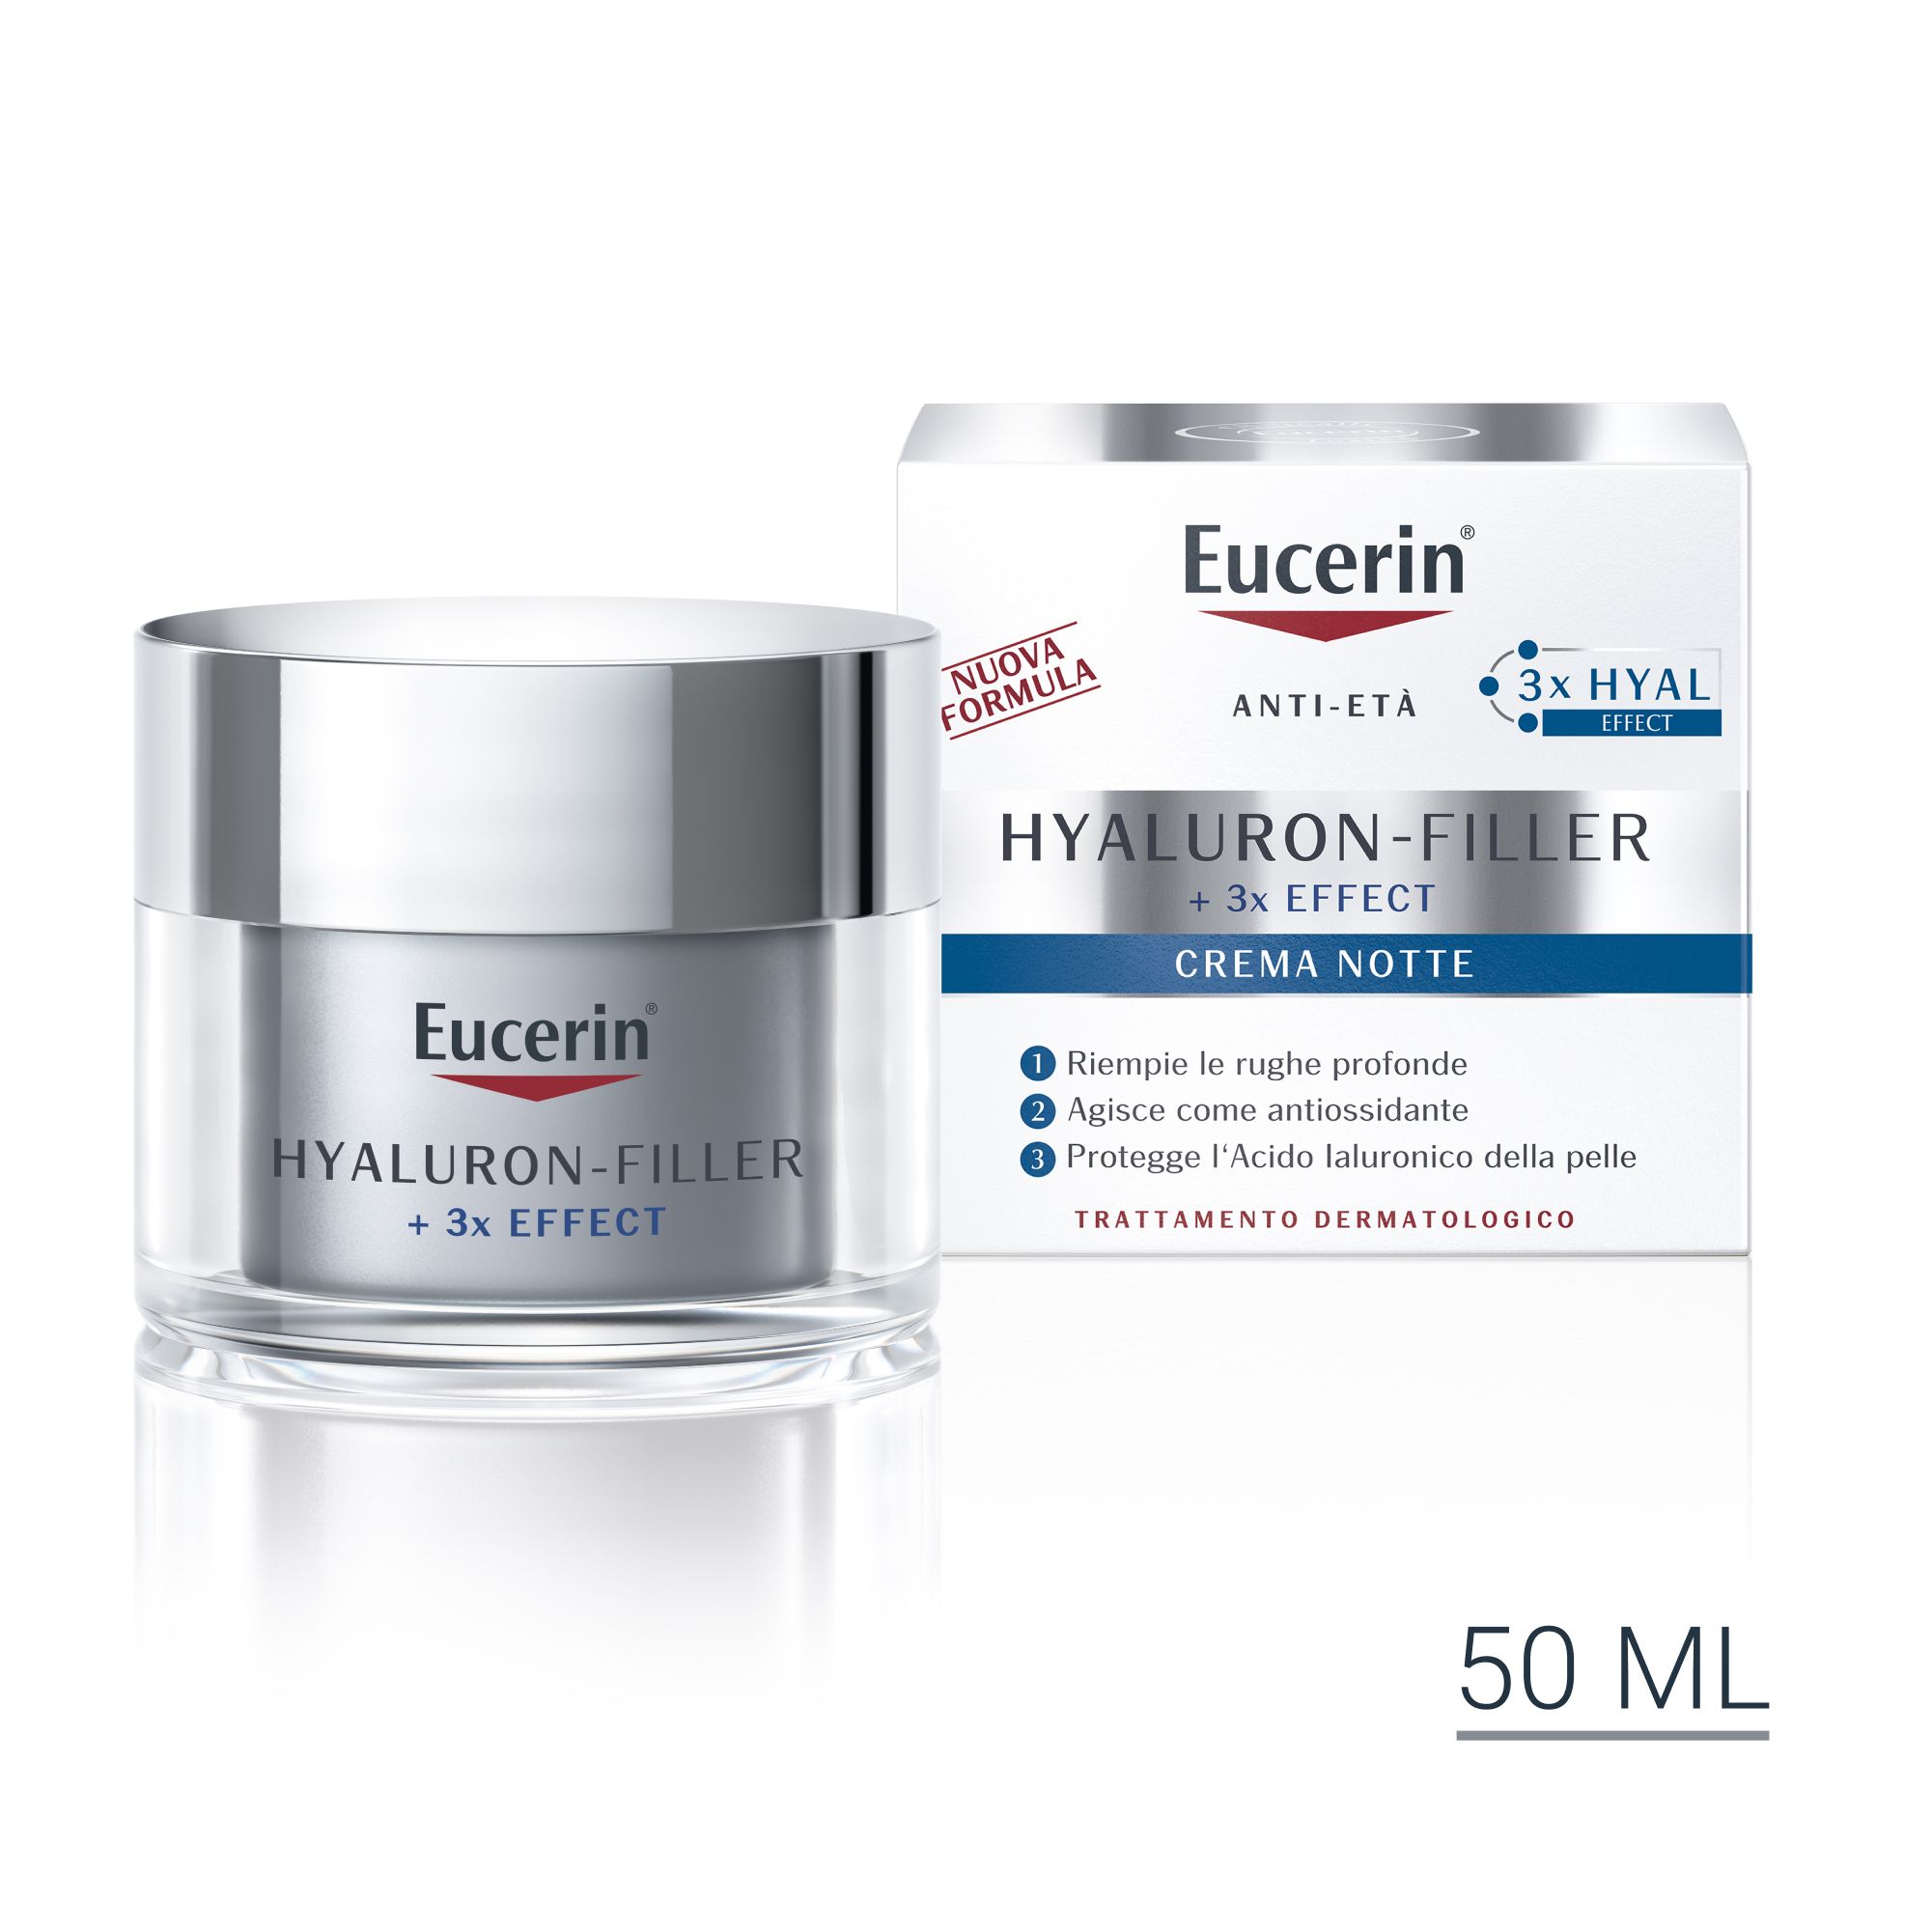 Eucerin Hyaluron-Filler Crema Notte 50 ml